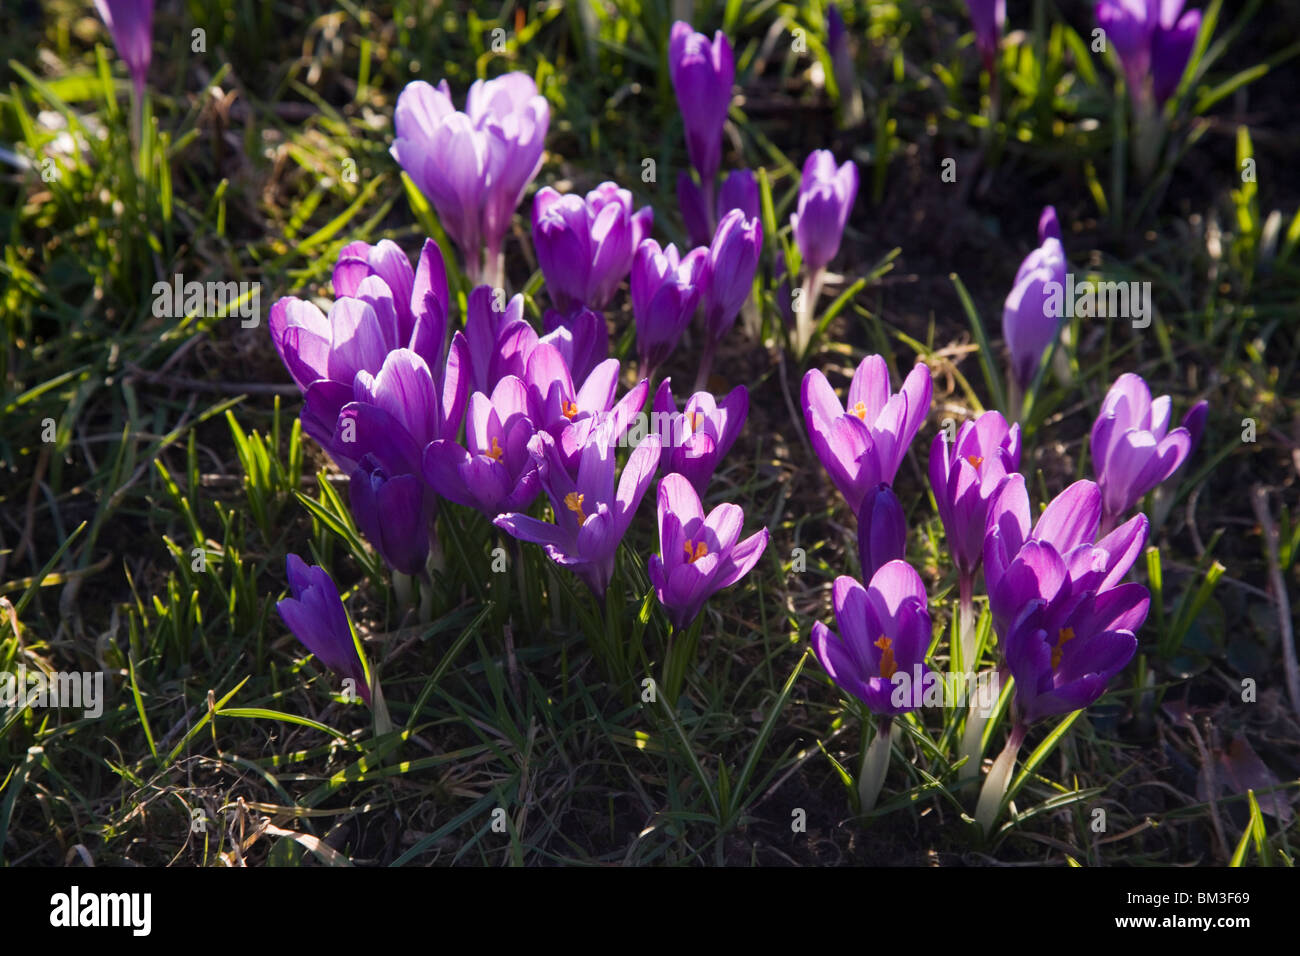 spring flowering crocuses Stock Photo